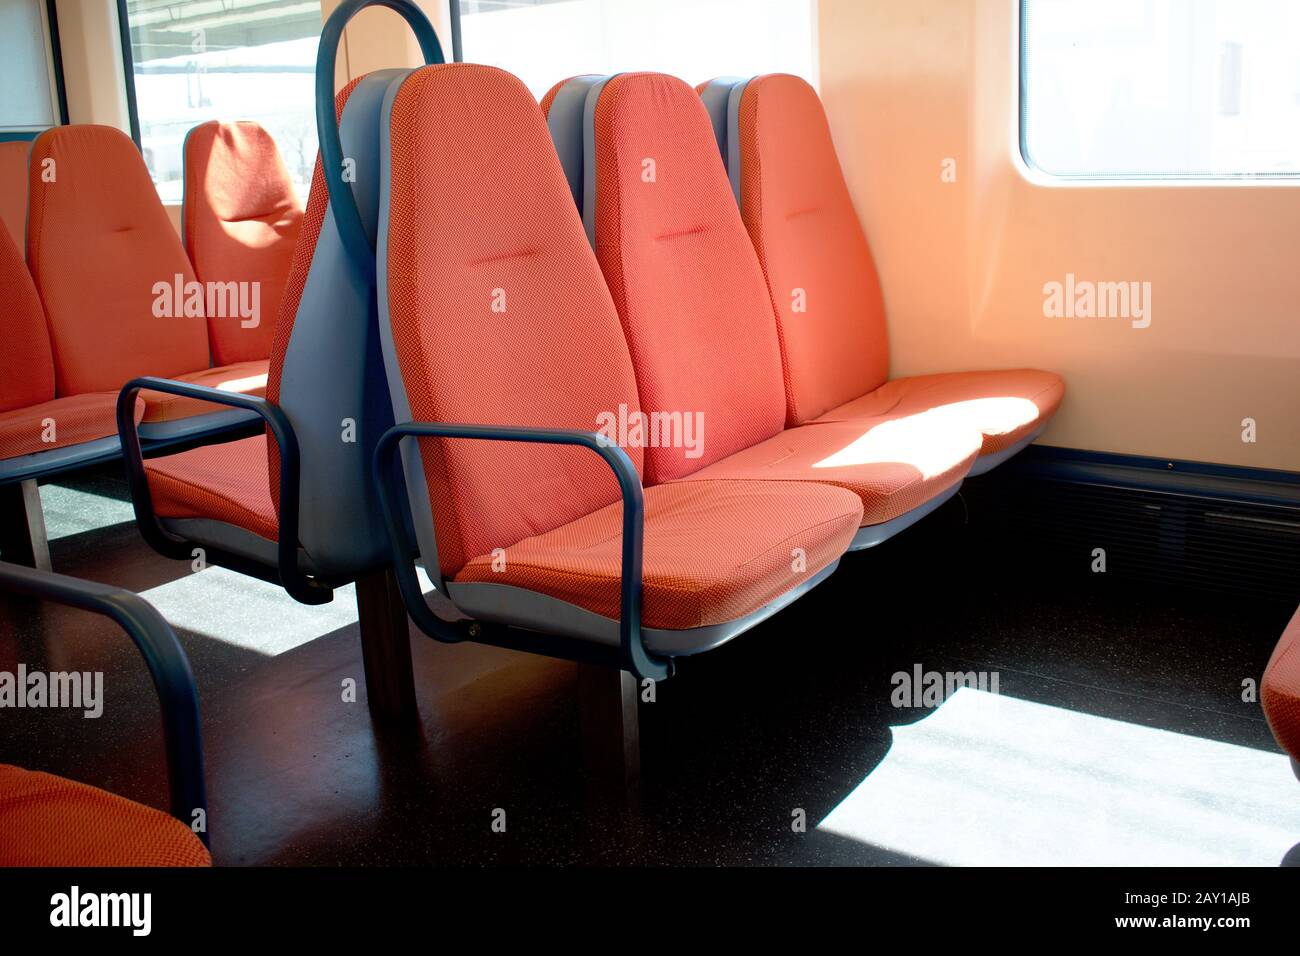 All'interno di una cabina ferroviaria con sedili arancioni e luce solare che entra attraverso i finestrini Foto Stock